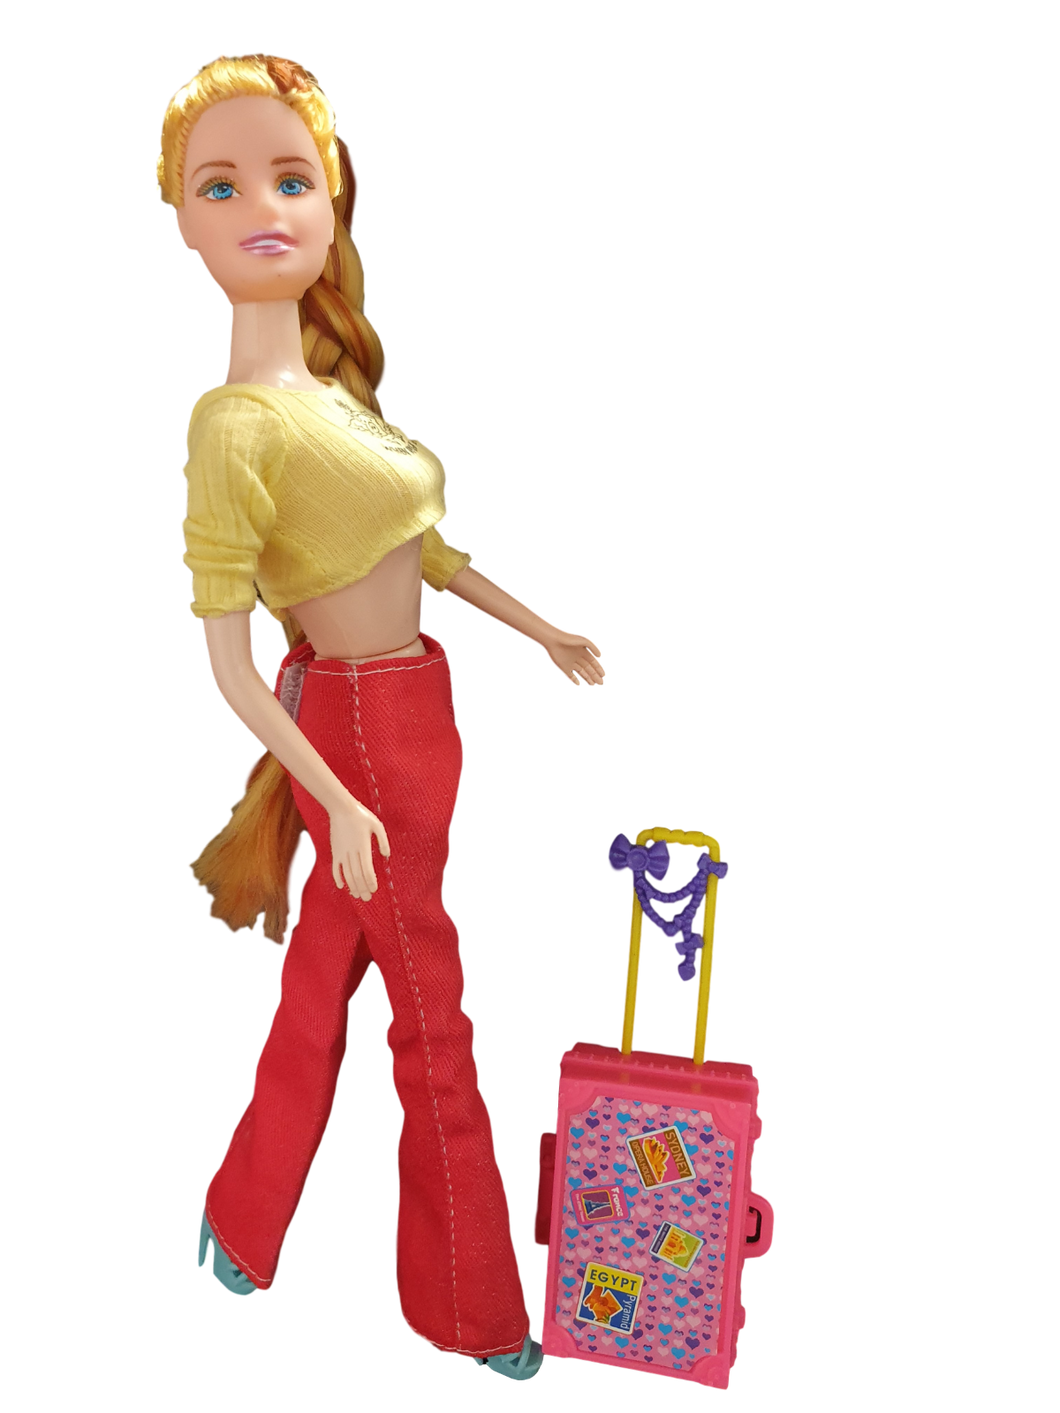 Suitcase Luggage Toys